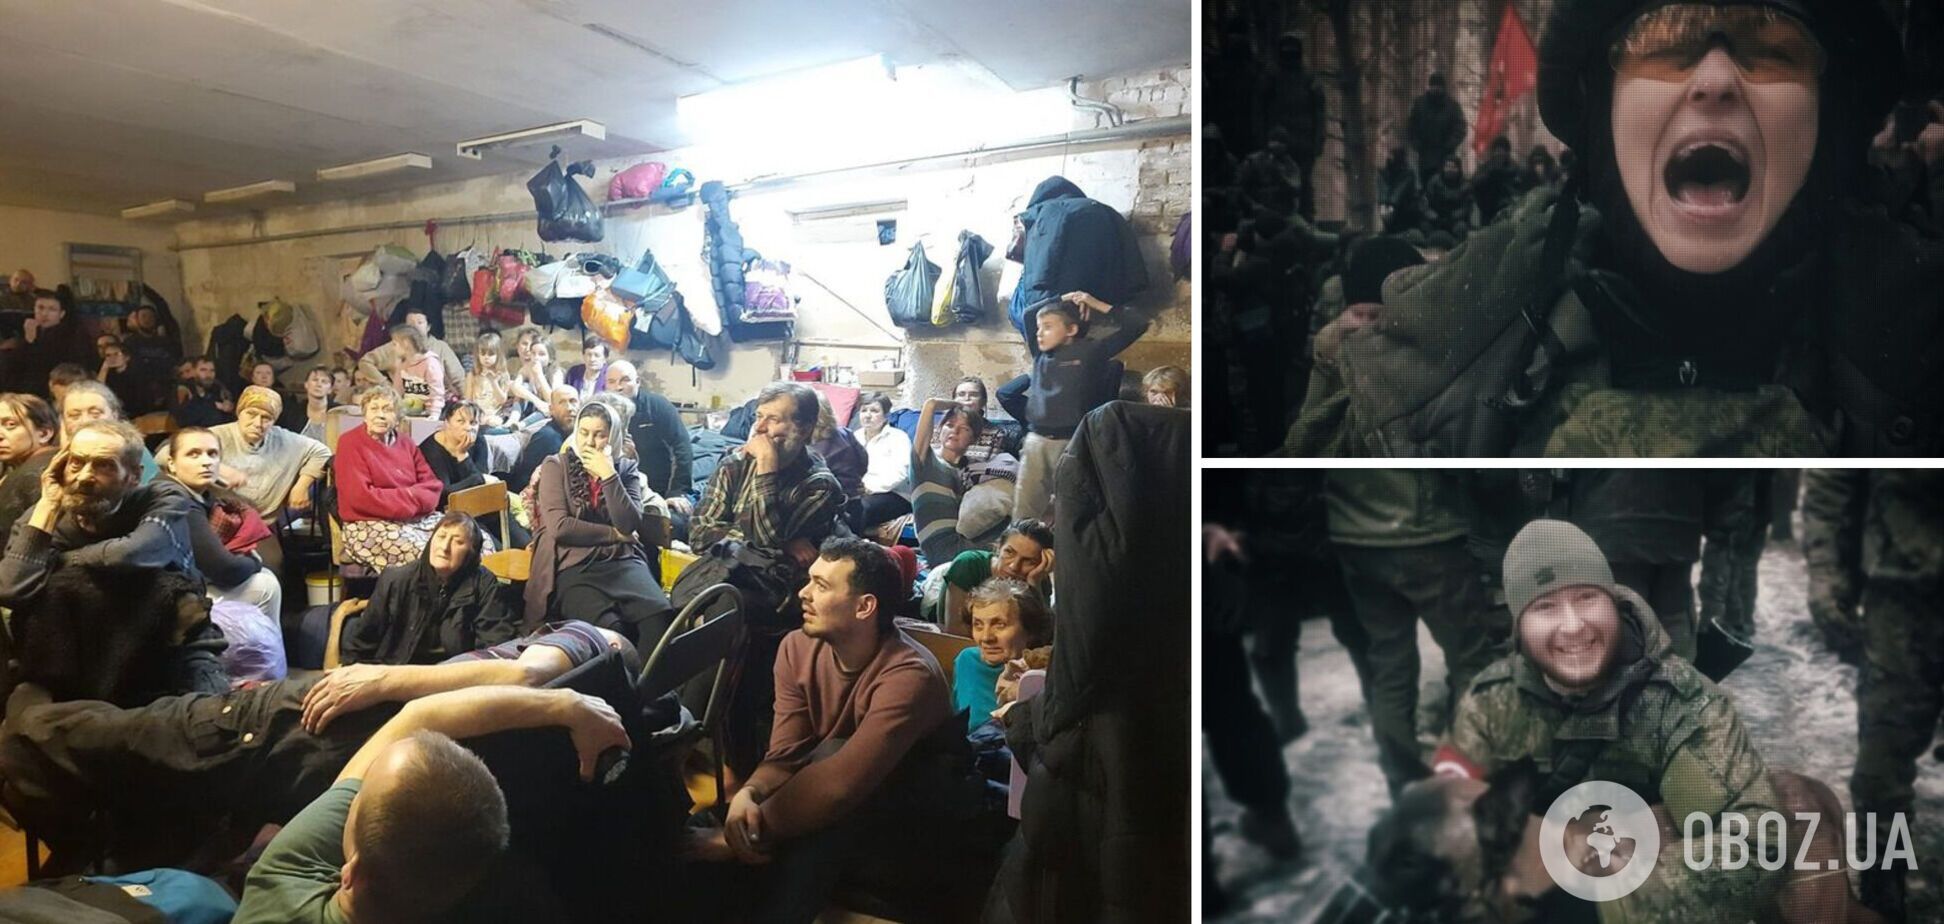 'Допомогла' Чичеріна: журналісти викрили окупанта, який знущався з жителів Ягідного